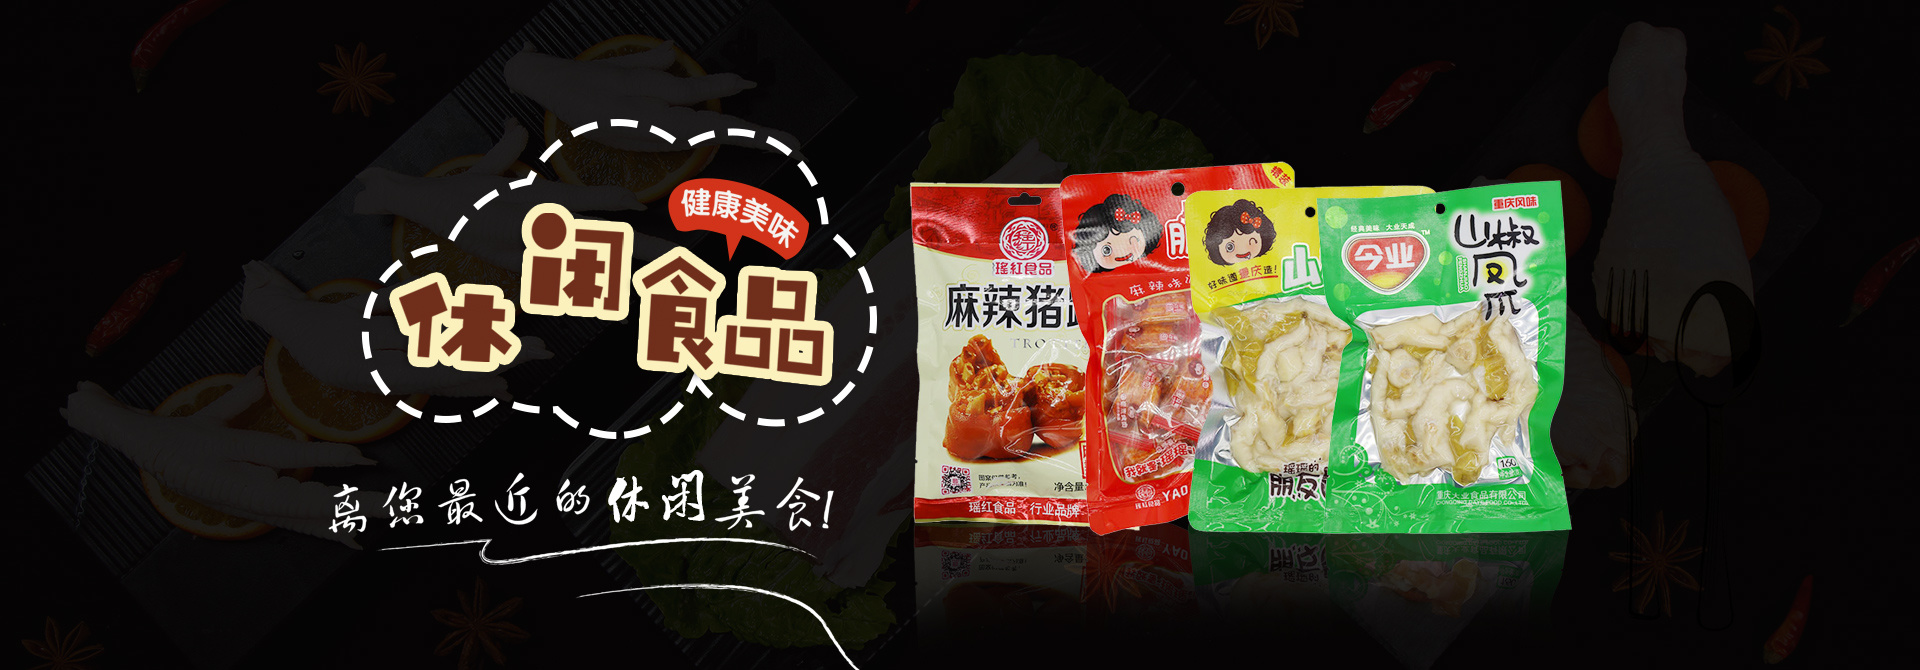 重慶瑤紅食品有限公司